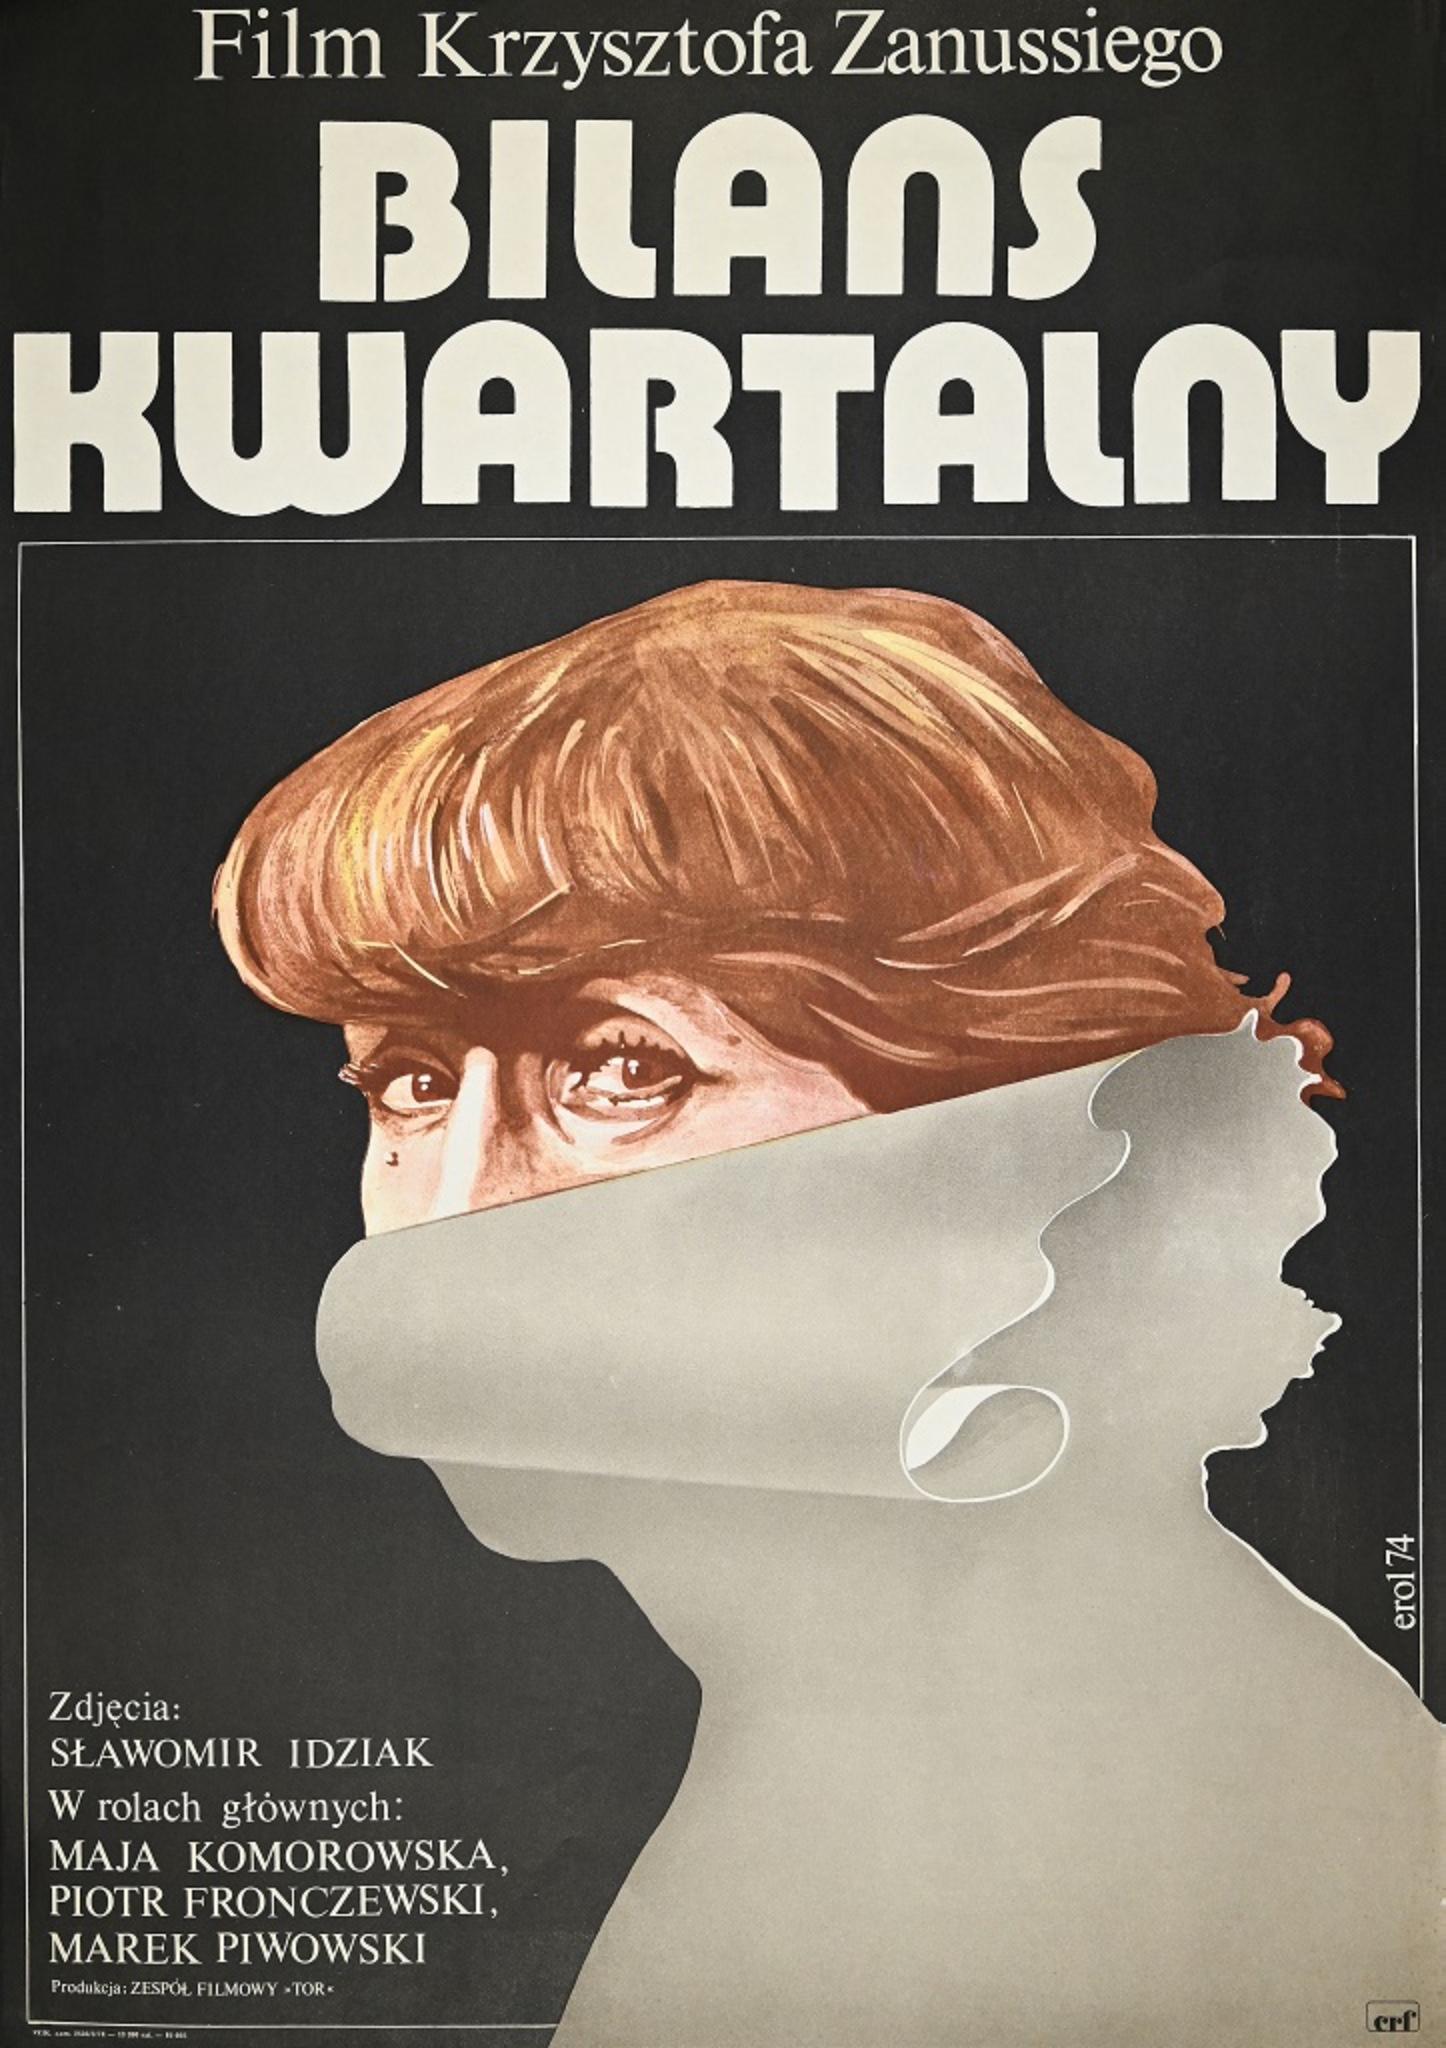 Affiche vintage originale réalisée par Jakub Erol (Pologne, 1941-2018) en 1974. 

Bon état.

Signé et daté. 

Ce travail a été réalisé pour faire la publicité d'un cinéma polonais.